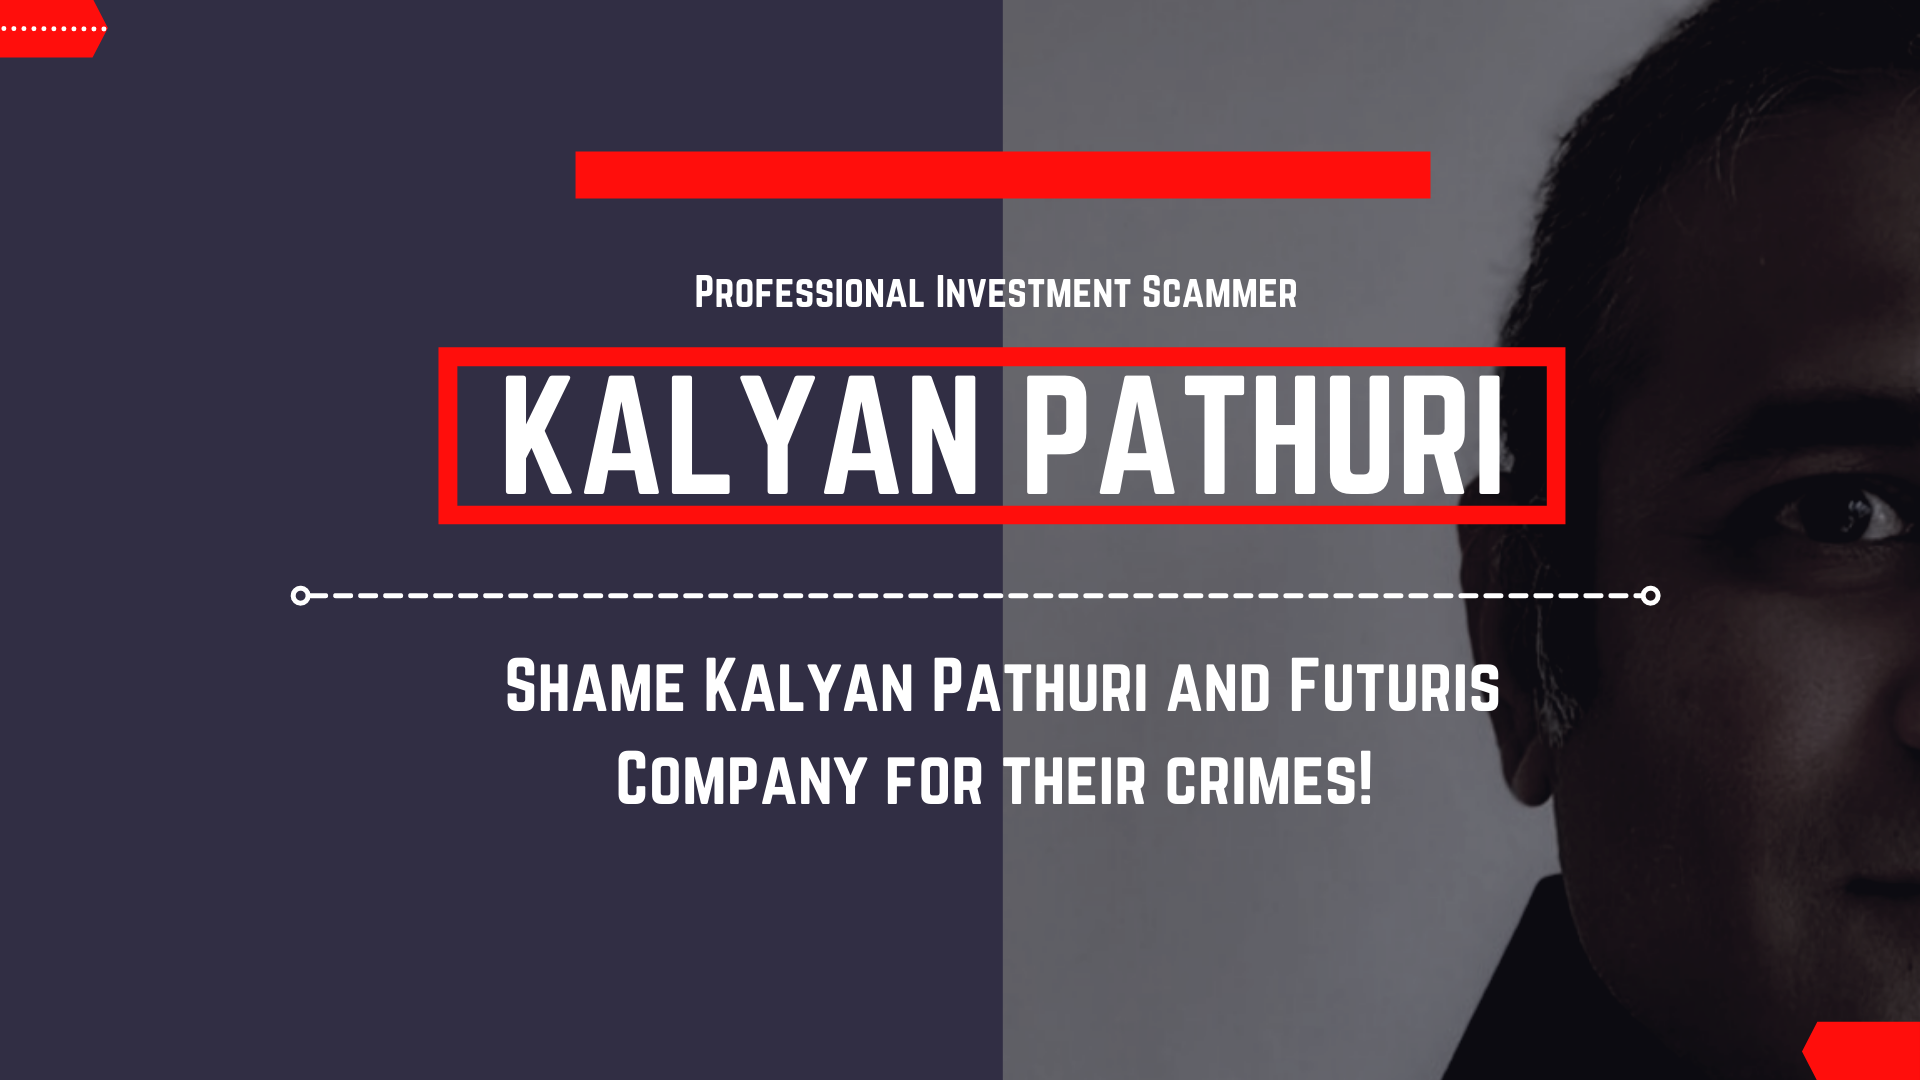 Kalyan Pathuri Scammer